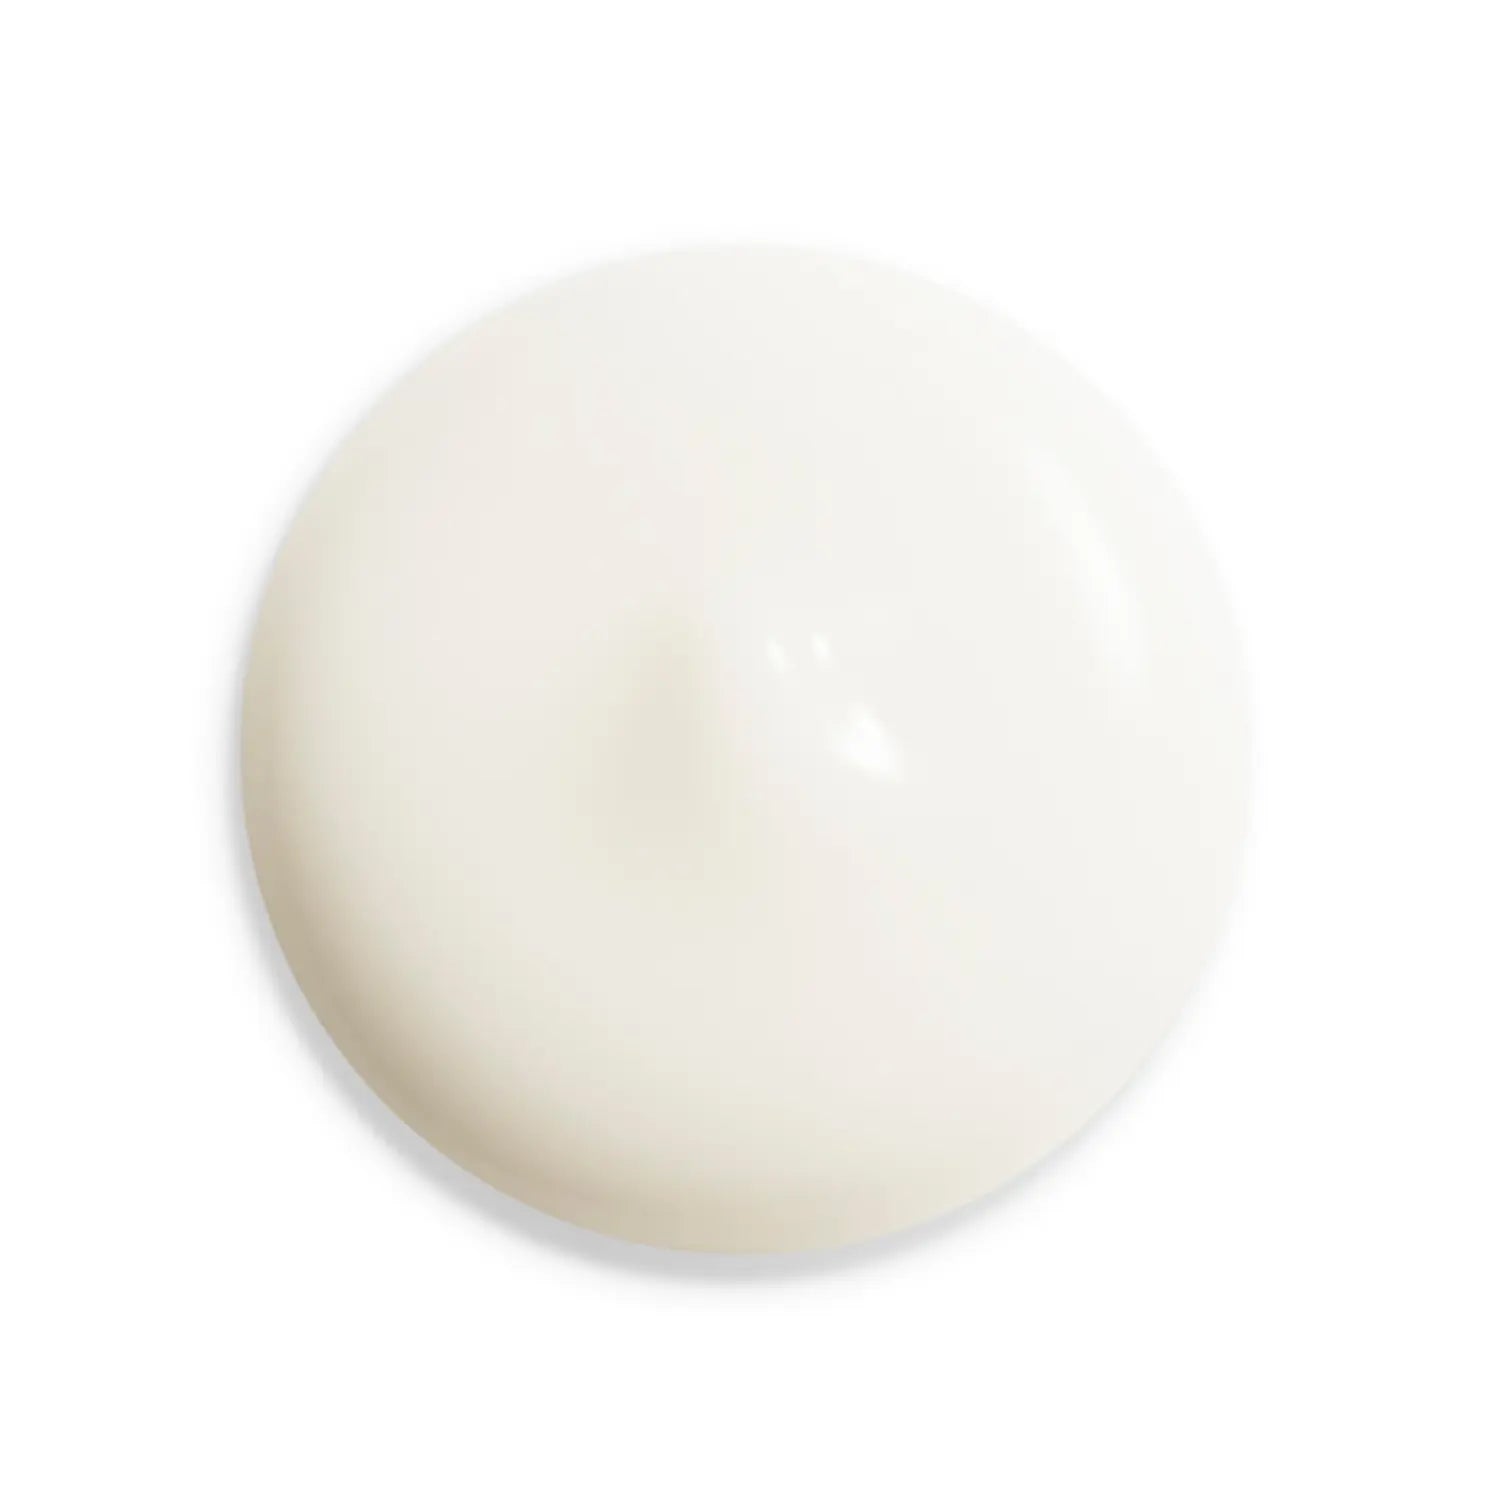 Shiseido White Lucent Illuminating Micro S Serum